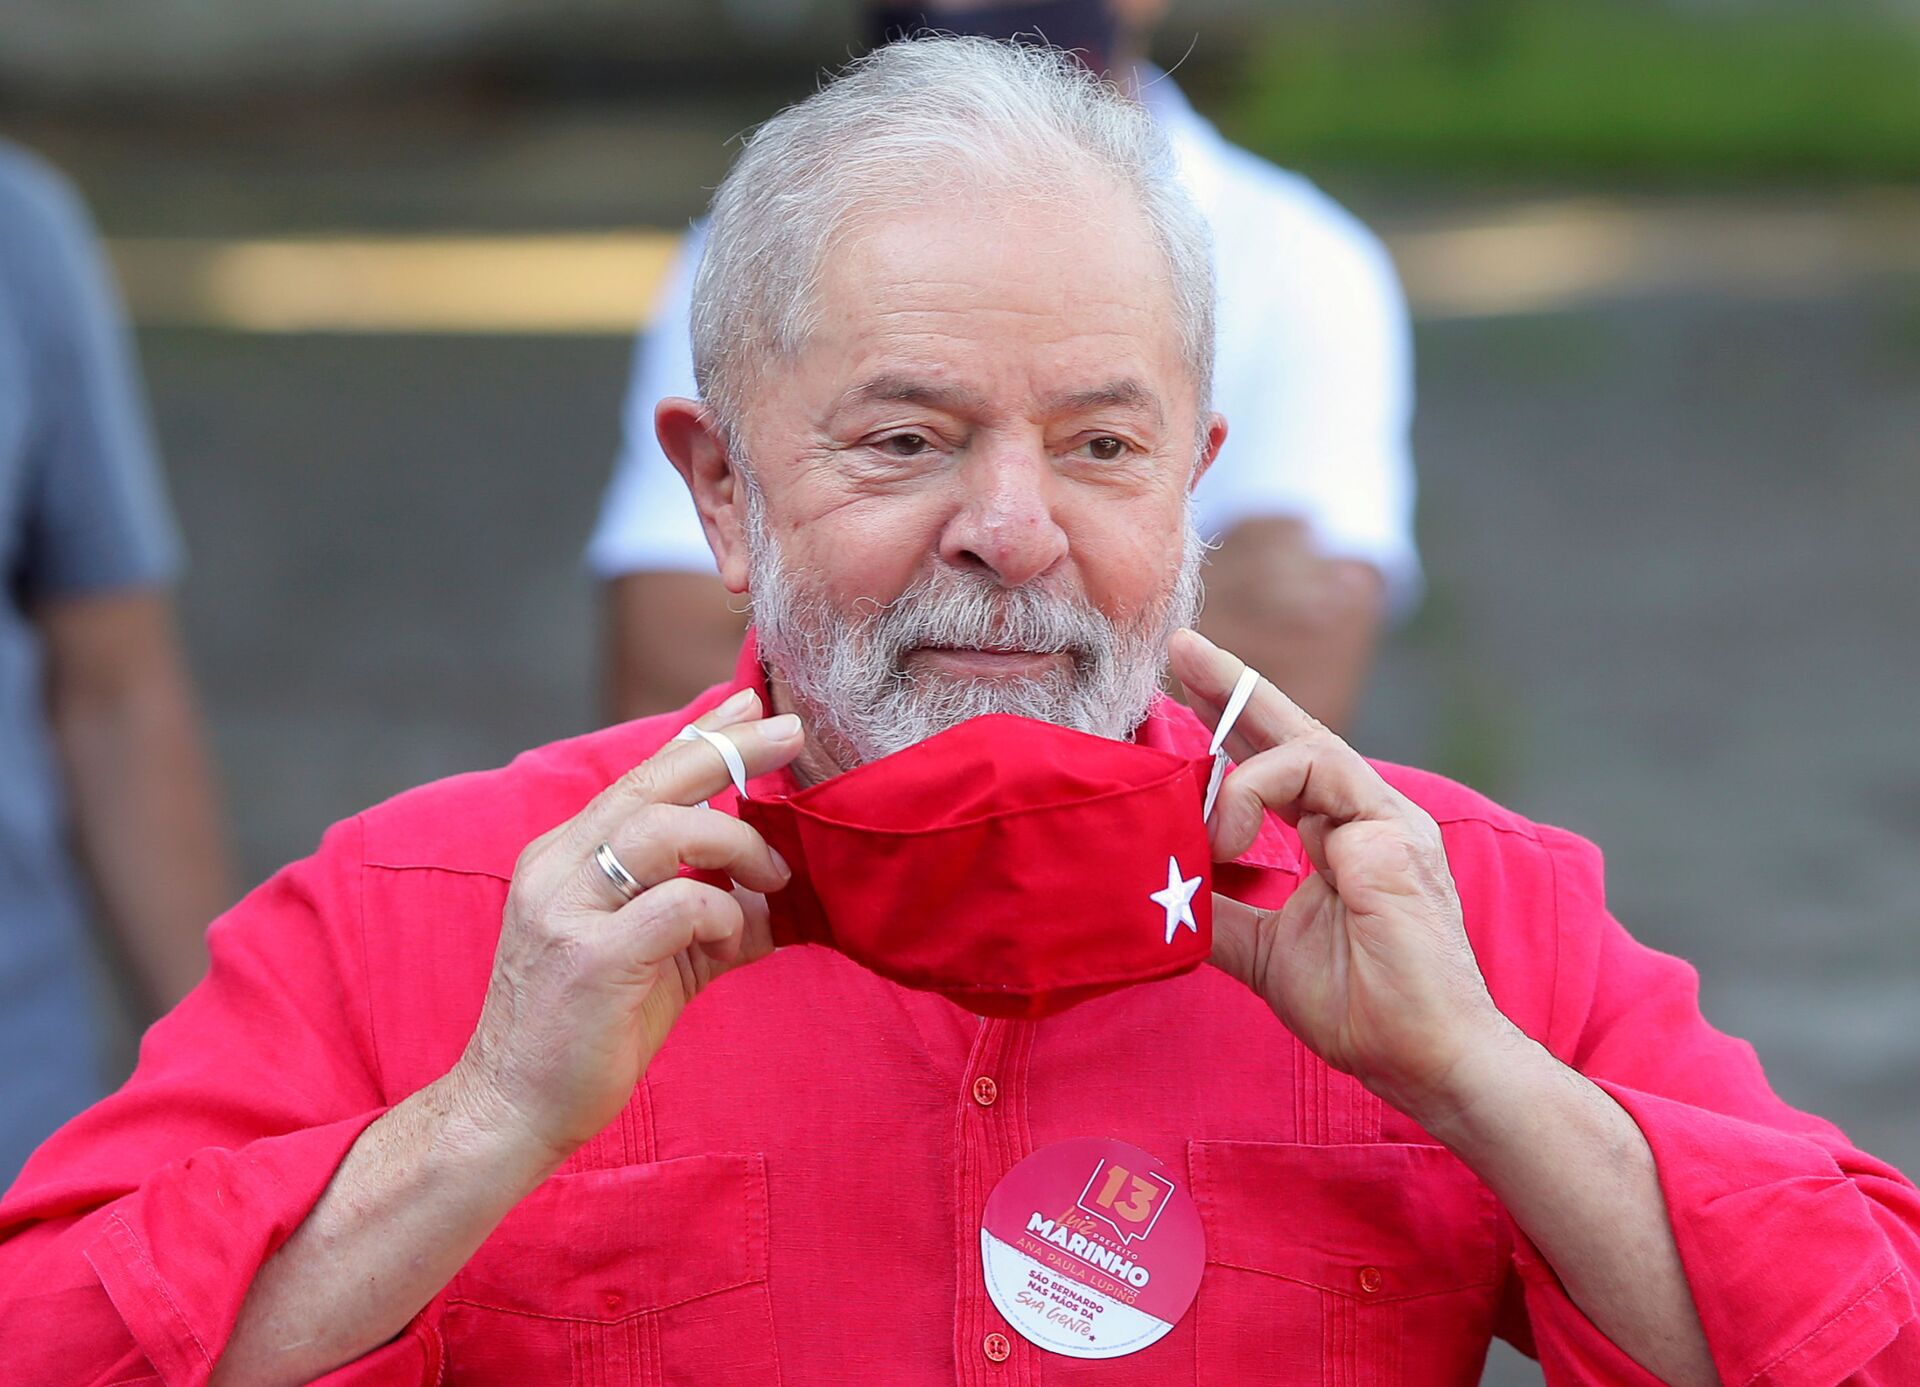 Ministros do STF devem julgar suspeição de Moro mesmo após decisão sobre Lula, diz mídia - Sputnik Brasil, 1920, 08.03.2021